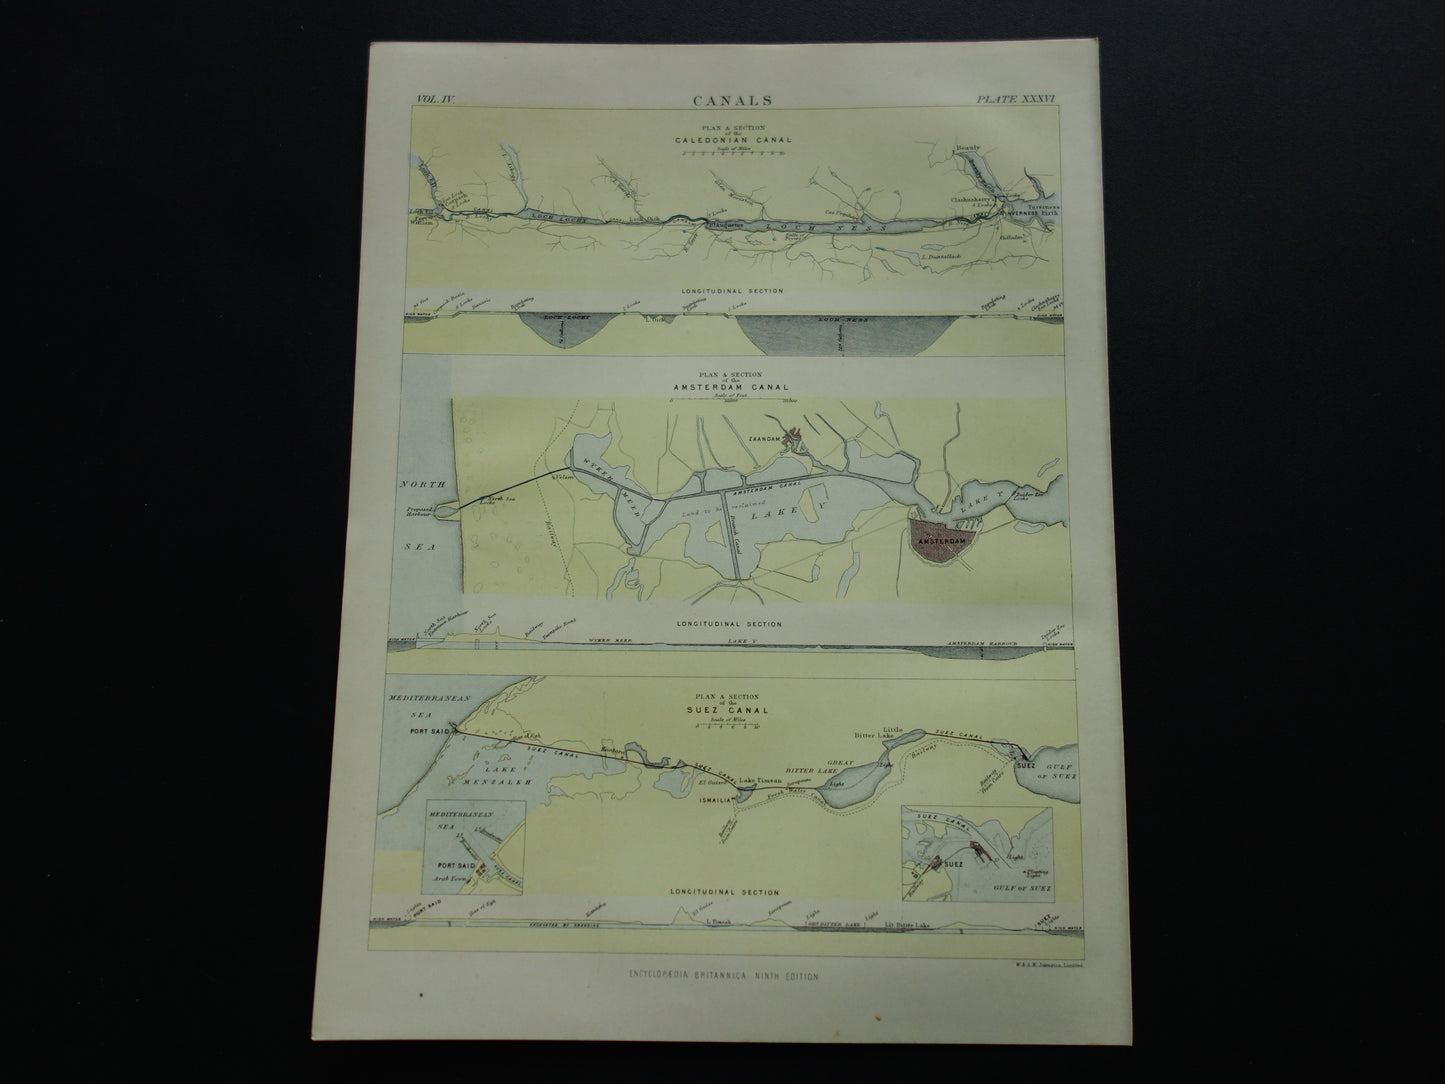 NOORDZEEKANAAL Antieke landkaart originele 140+ jaar oude Engelse kaart van het Noordzeekanaal Amsterdam Ijmuiden